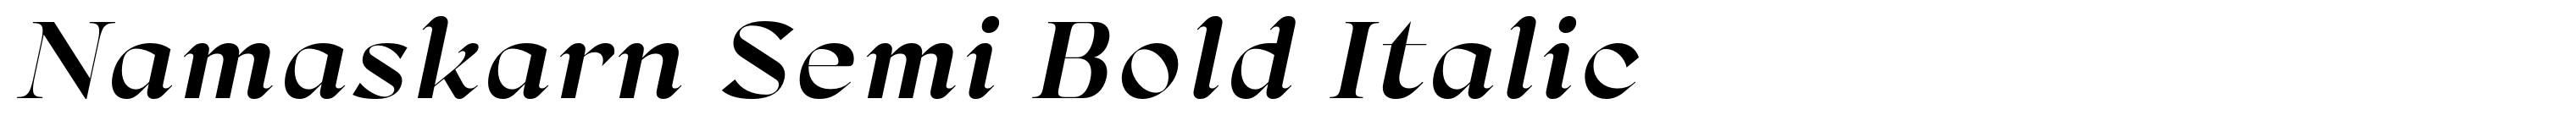 Namaskarn Semi Bold Italic